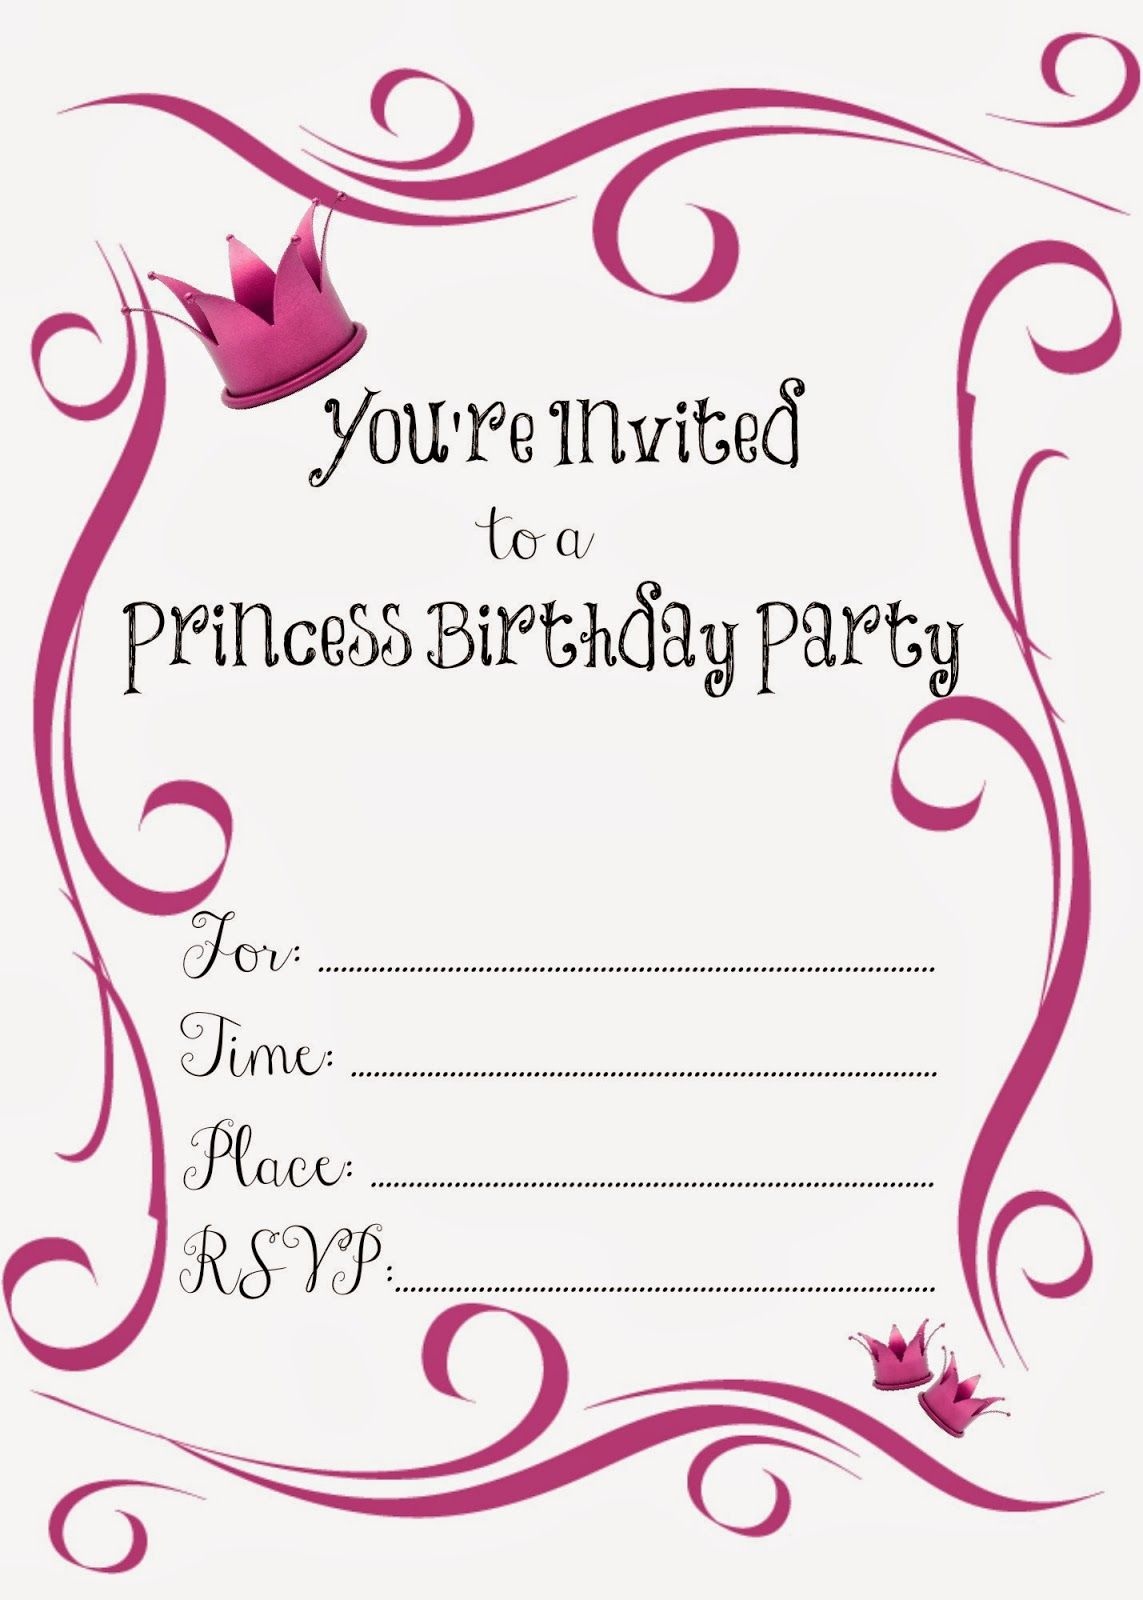 Free Printable Princess Birthday Party Invitations #freeprintables - Free Printable Princess Invitations